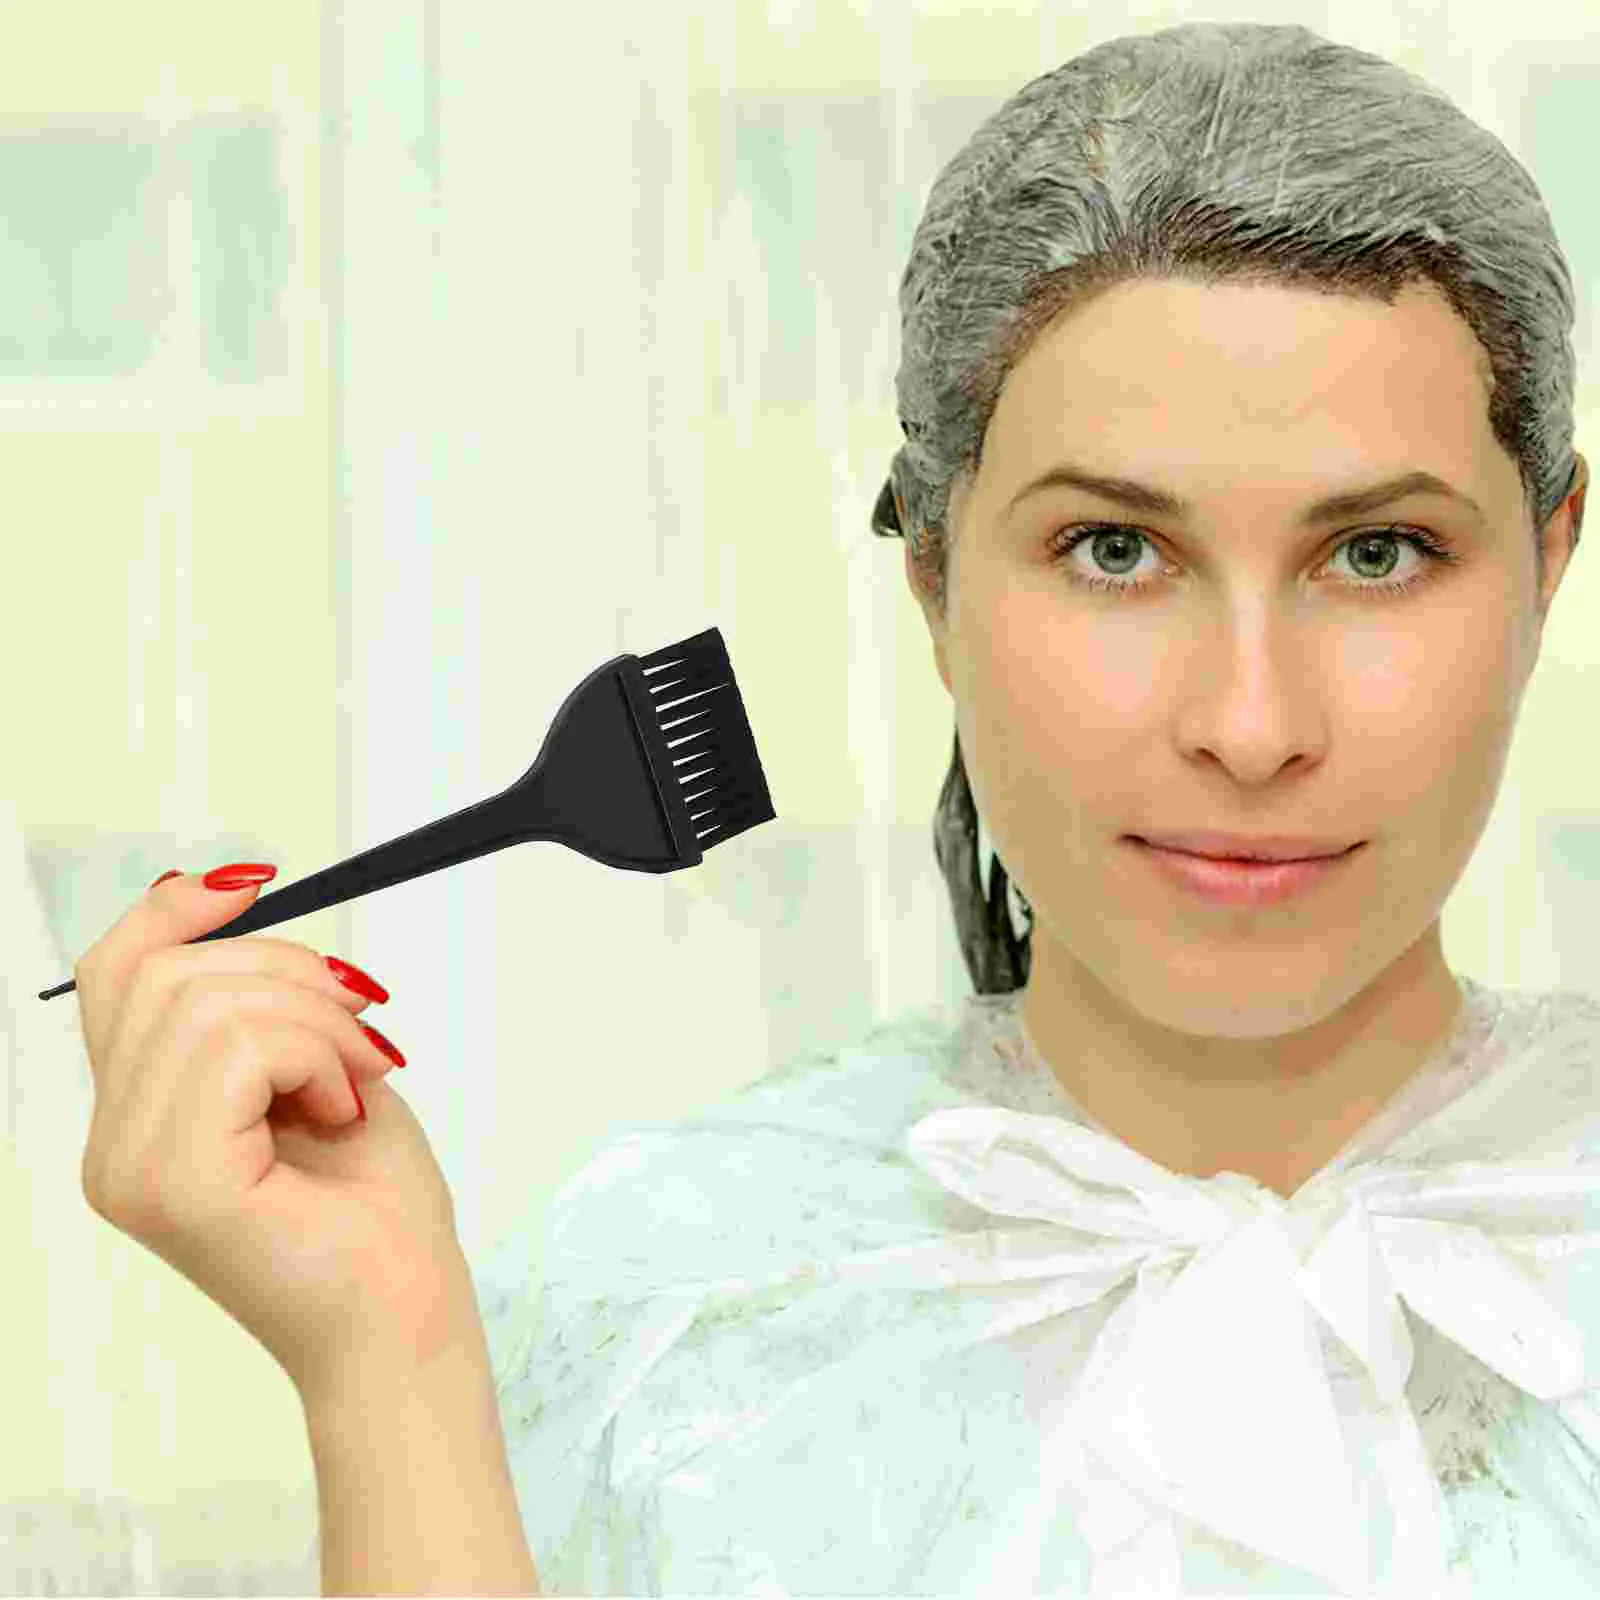 6 Stück Haar färbemittel Kappe Set Häkeln adel Färbung Pinsel Hut Highlight Kit Färben Salon Werkzeug Kippen